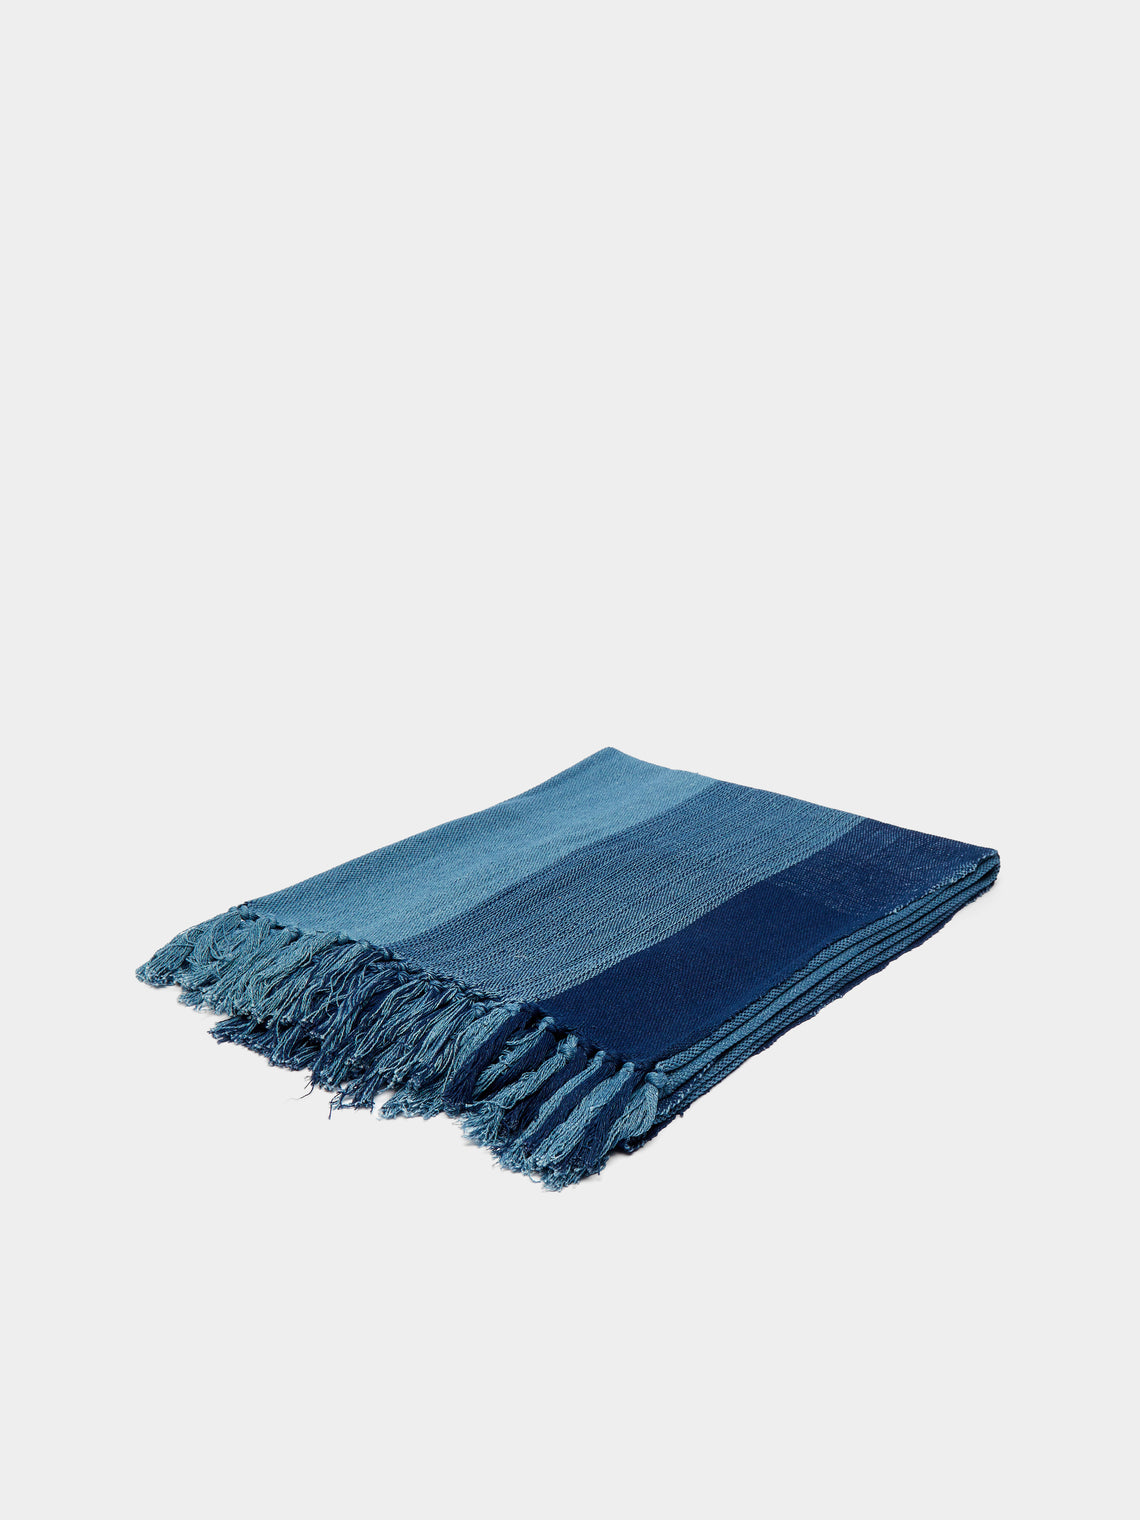 Hollie Ward - Ordahl Indigo-Dyed Cotton Blanket -  - ABASK